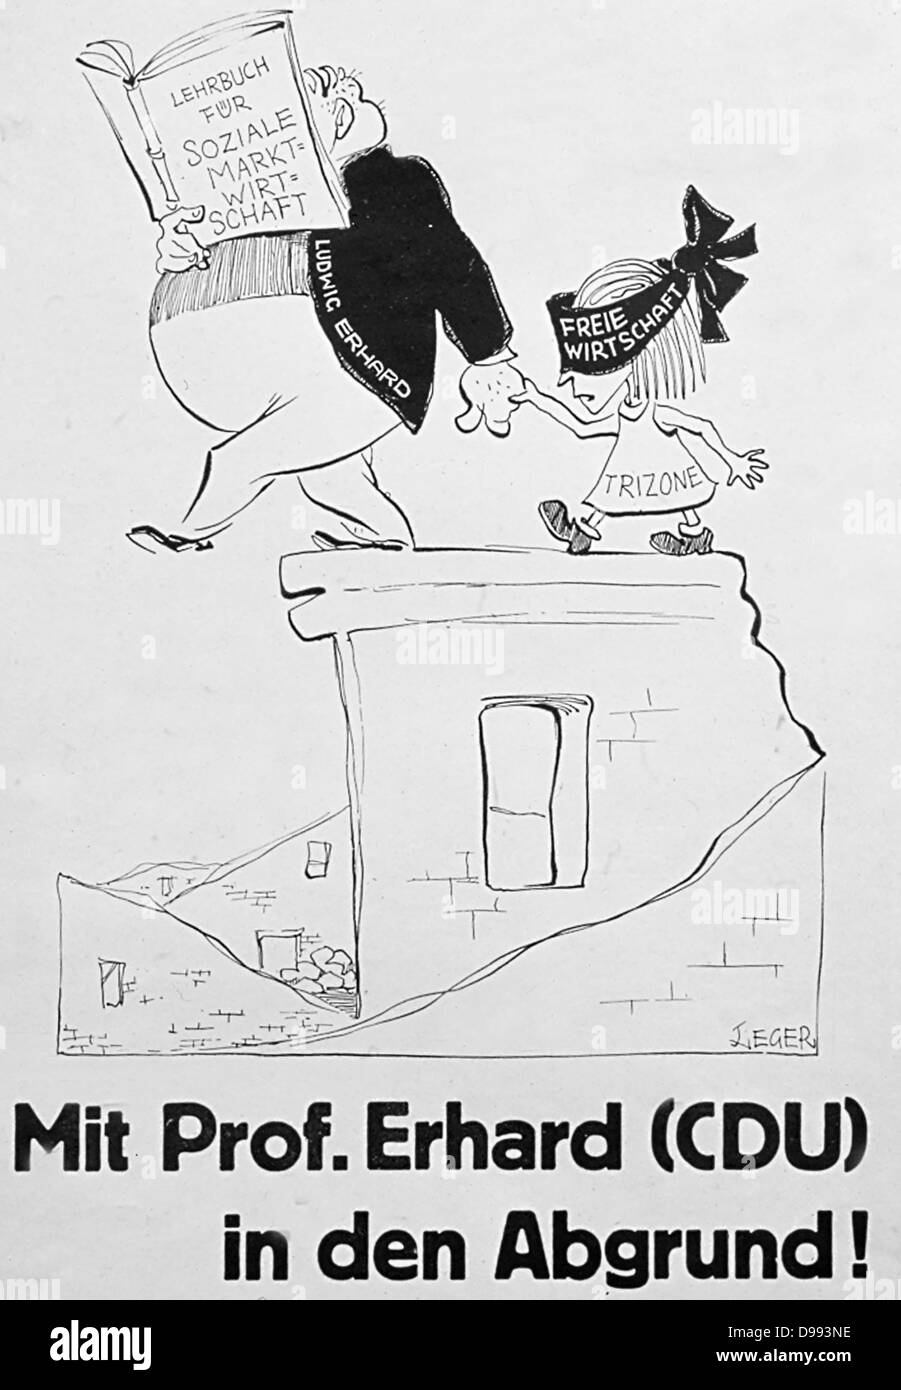 "Ella Pof.Erhard (CDU) en den abgrund' (con FOP.Erhard (CDU) en el abismo). Una caricatura política de la década de 1960 representando el Canciller Erhard teniendo en Alemania a la CE la zona de libre comercio. Foto de stock